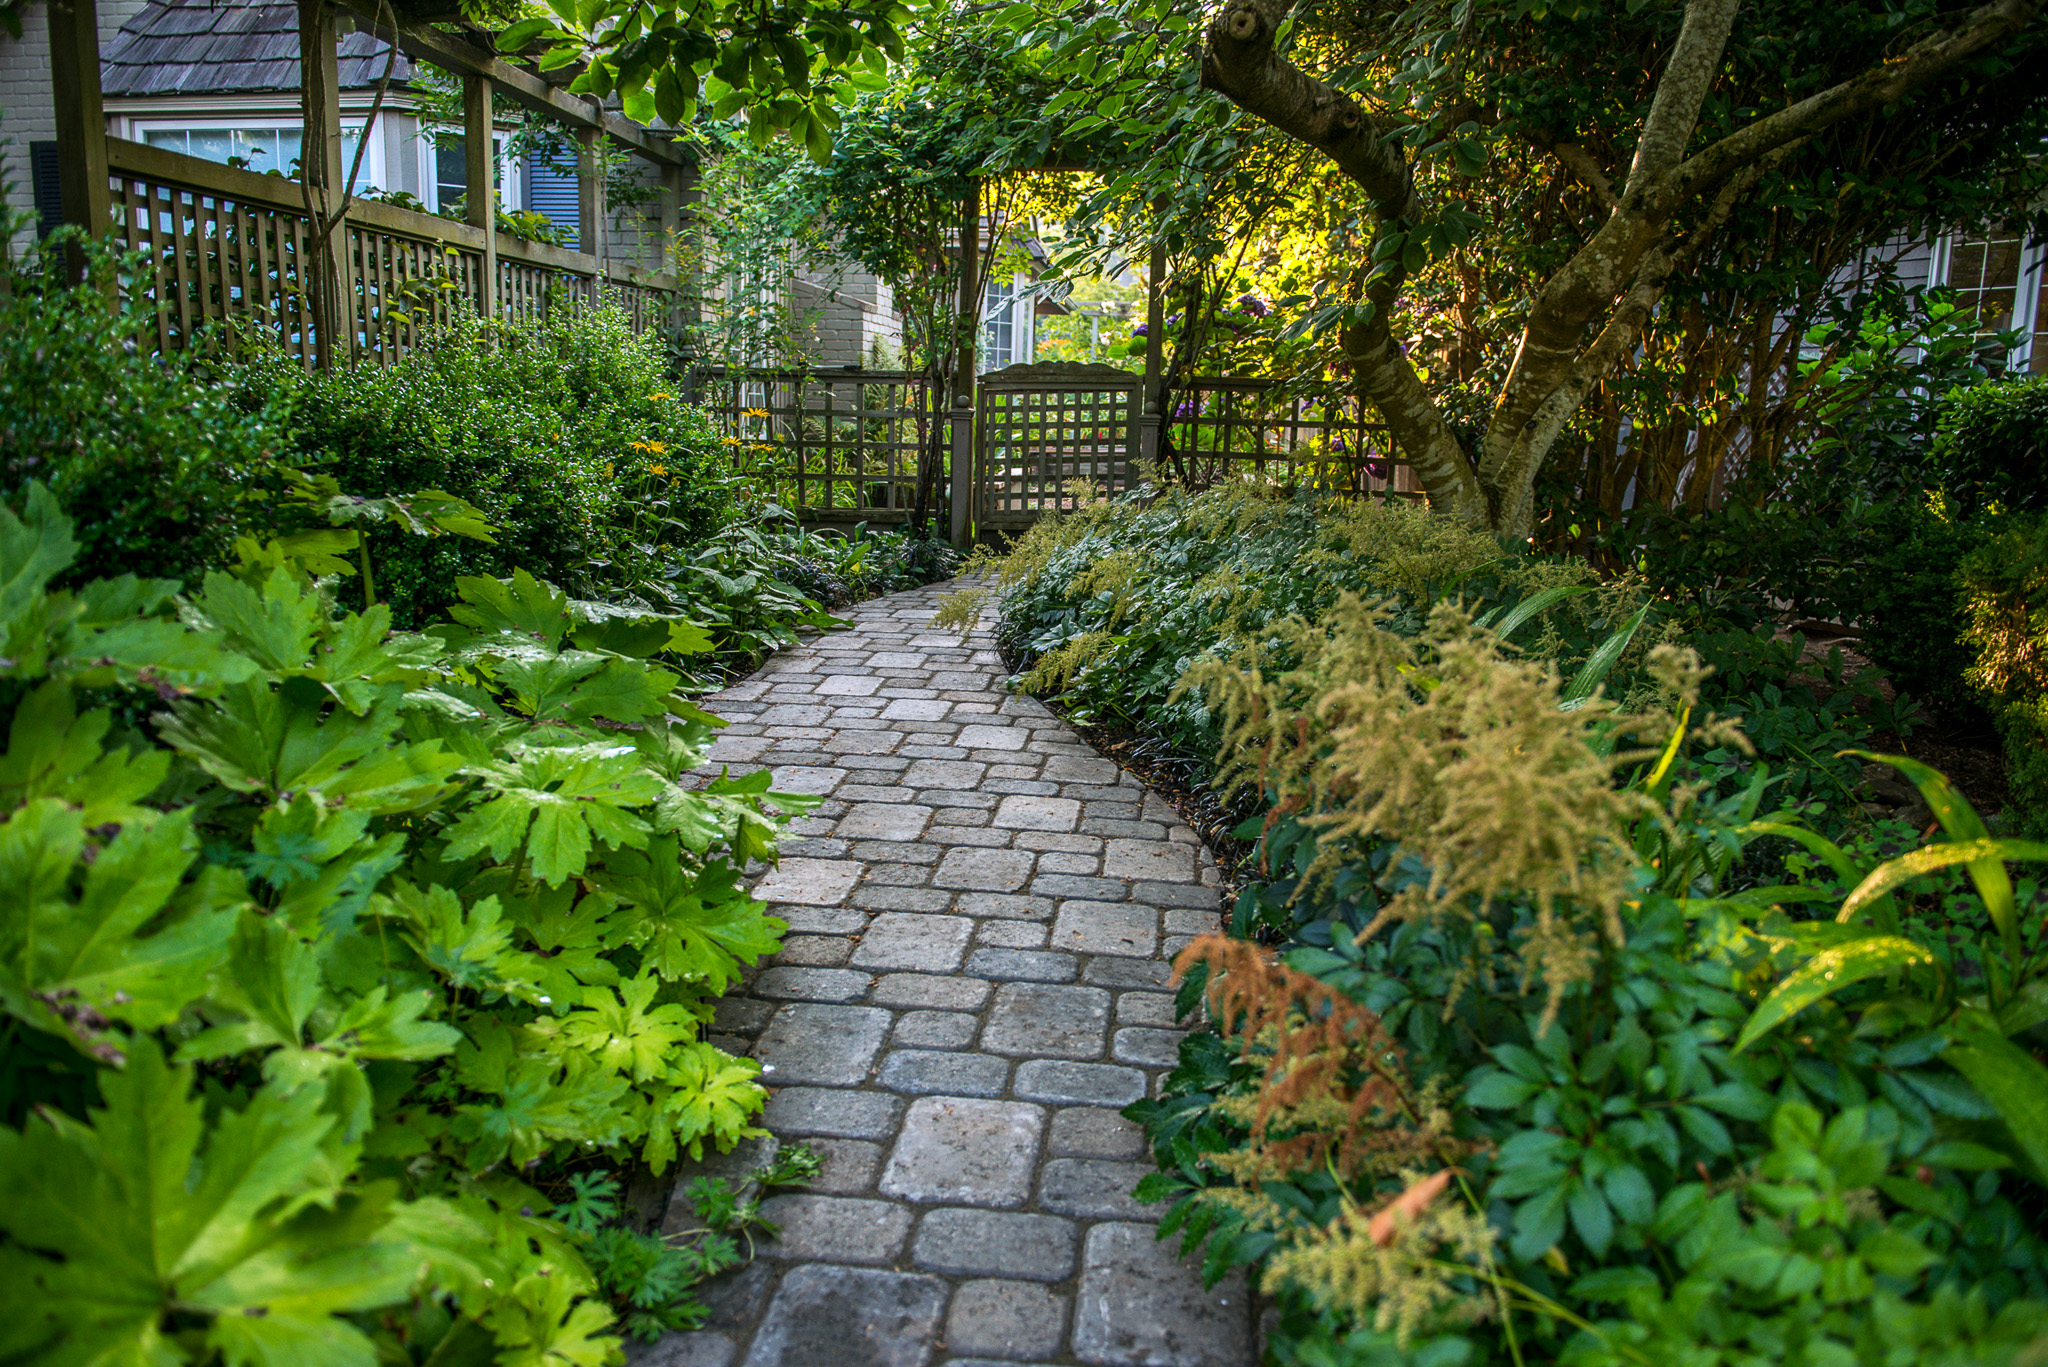 Dominion paver walkway through a garden